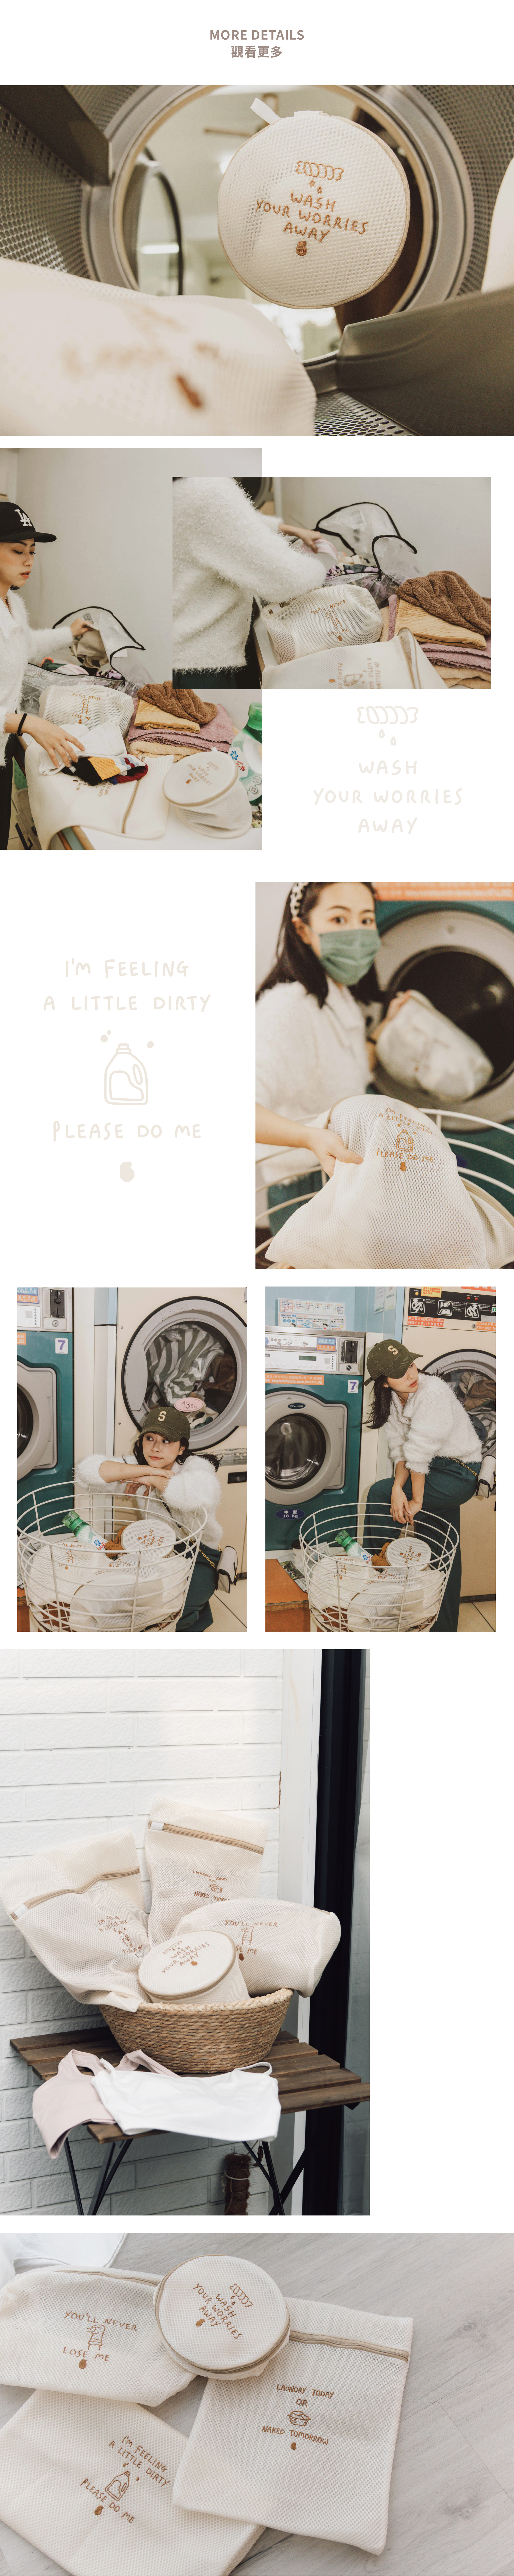 洗衣袋-03.jpg